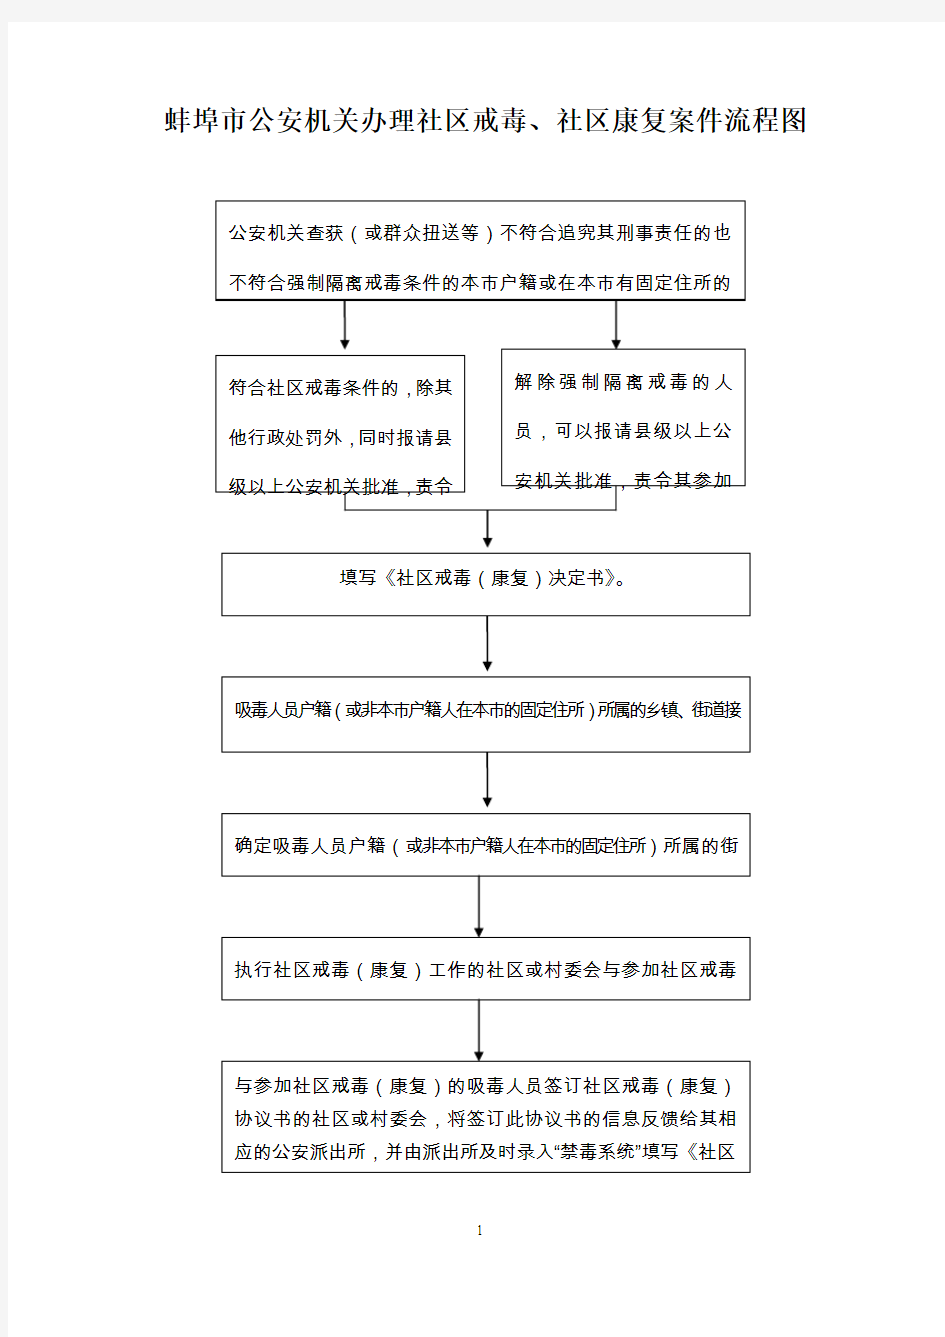 蚌埠市公安机关办理社区戒毒、社区康复案件流程图